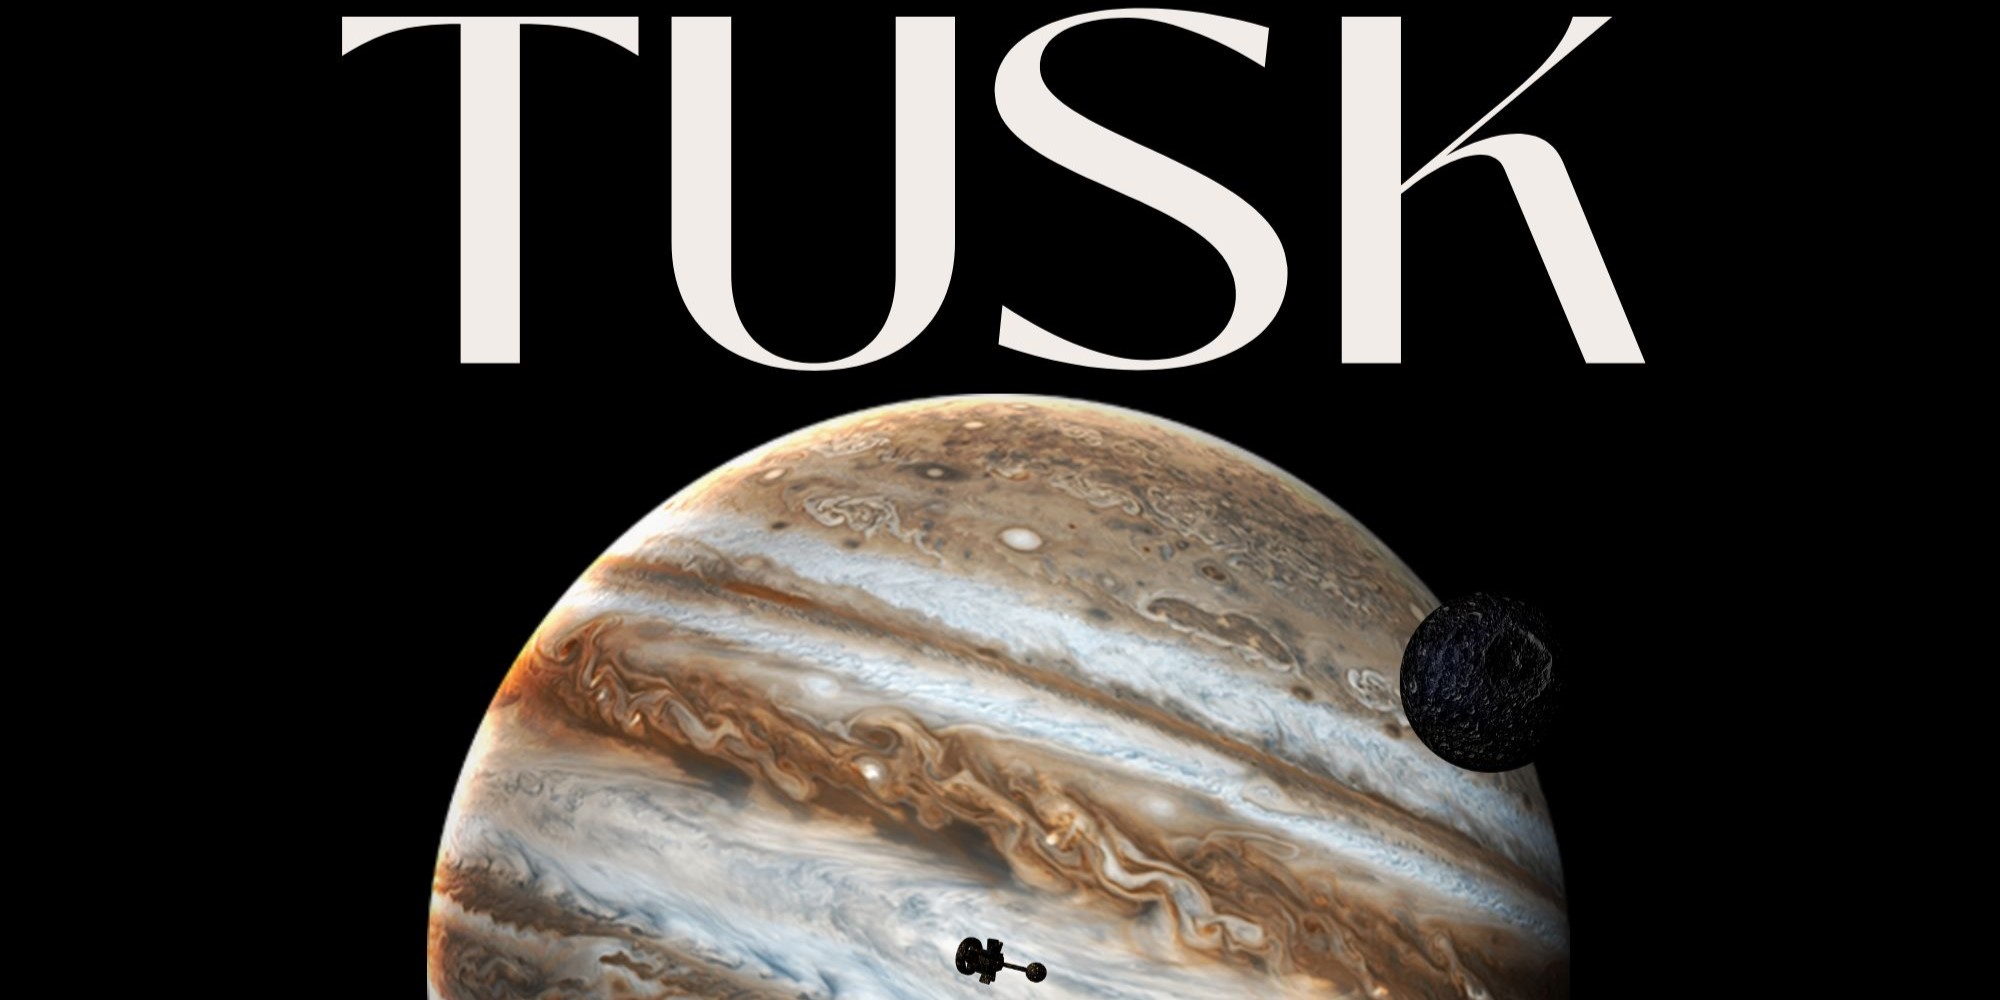 Tusk - A Fiasco Playset